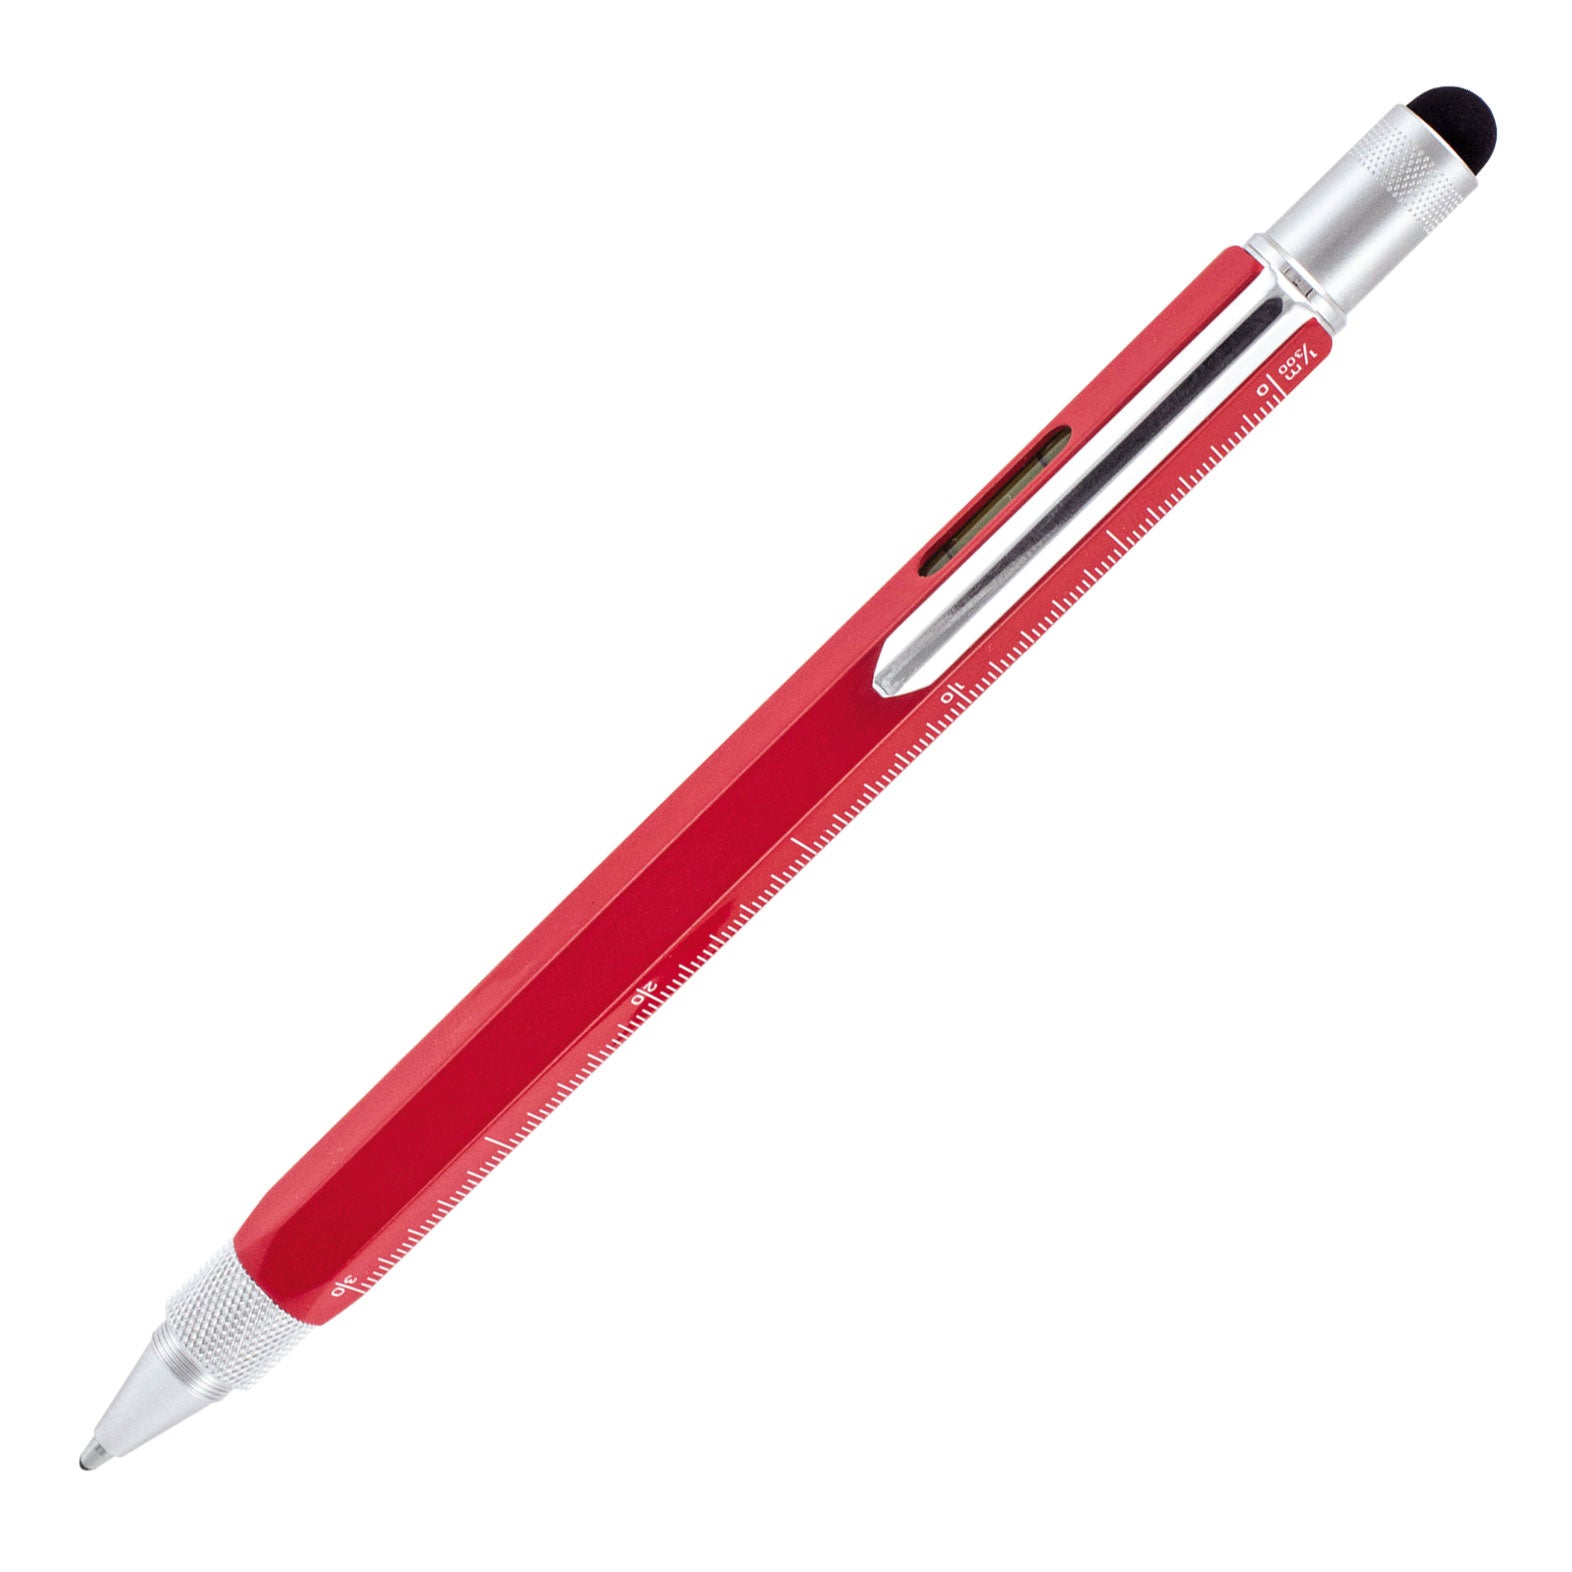 MonteVerde One Touch Ballpoint Pen & Stylus Red 